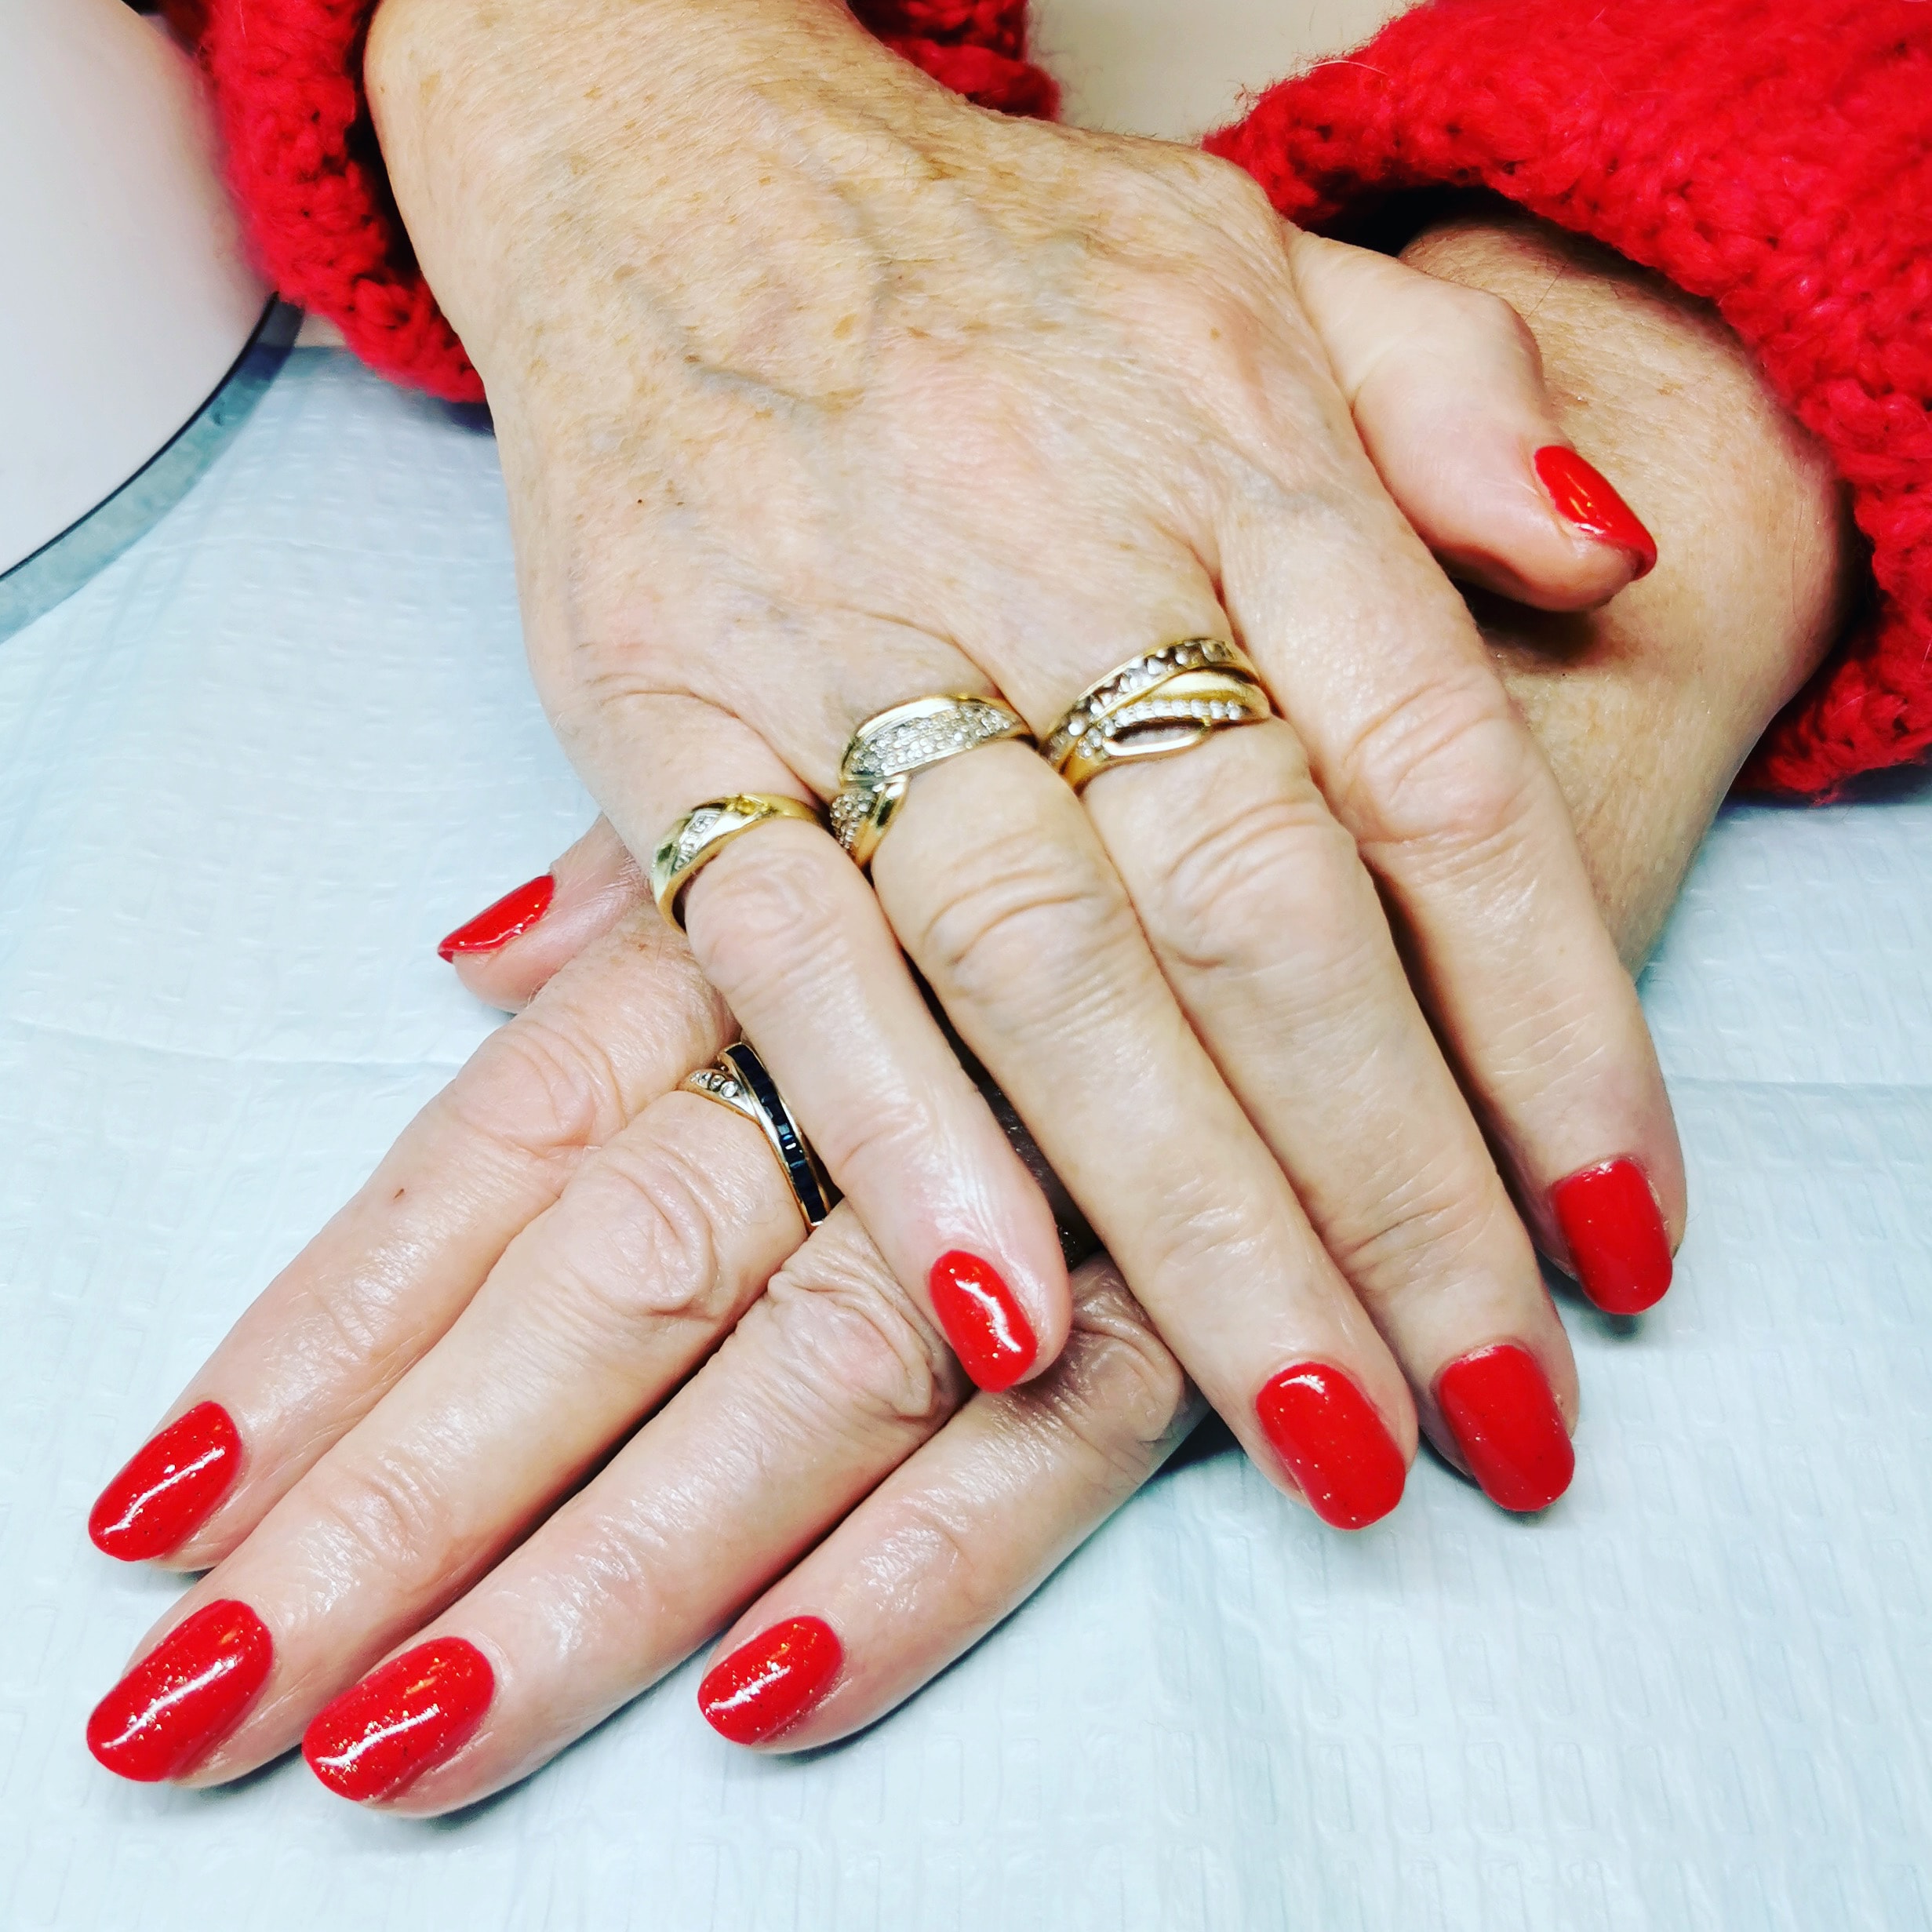 Få lekre negler med flere ulike neglebehandlinger hos Mango Nails (11 av 19)